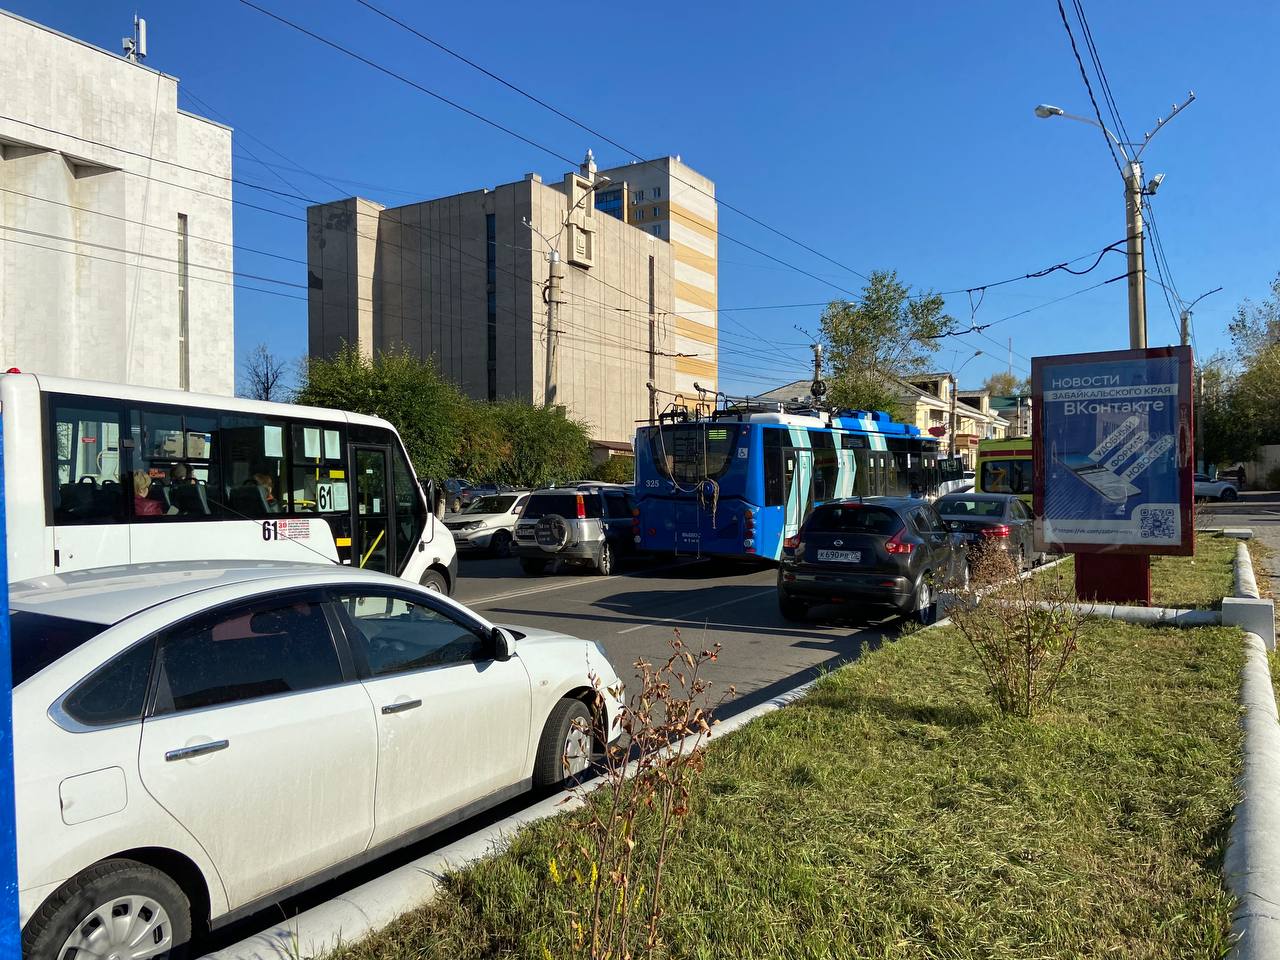 Троллейбус встал посреди проезжей части в Чите из-за падения пассажира